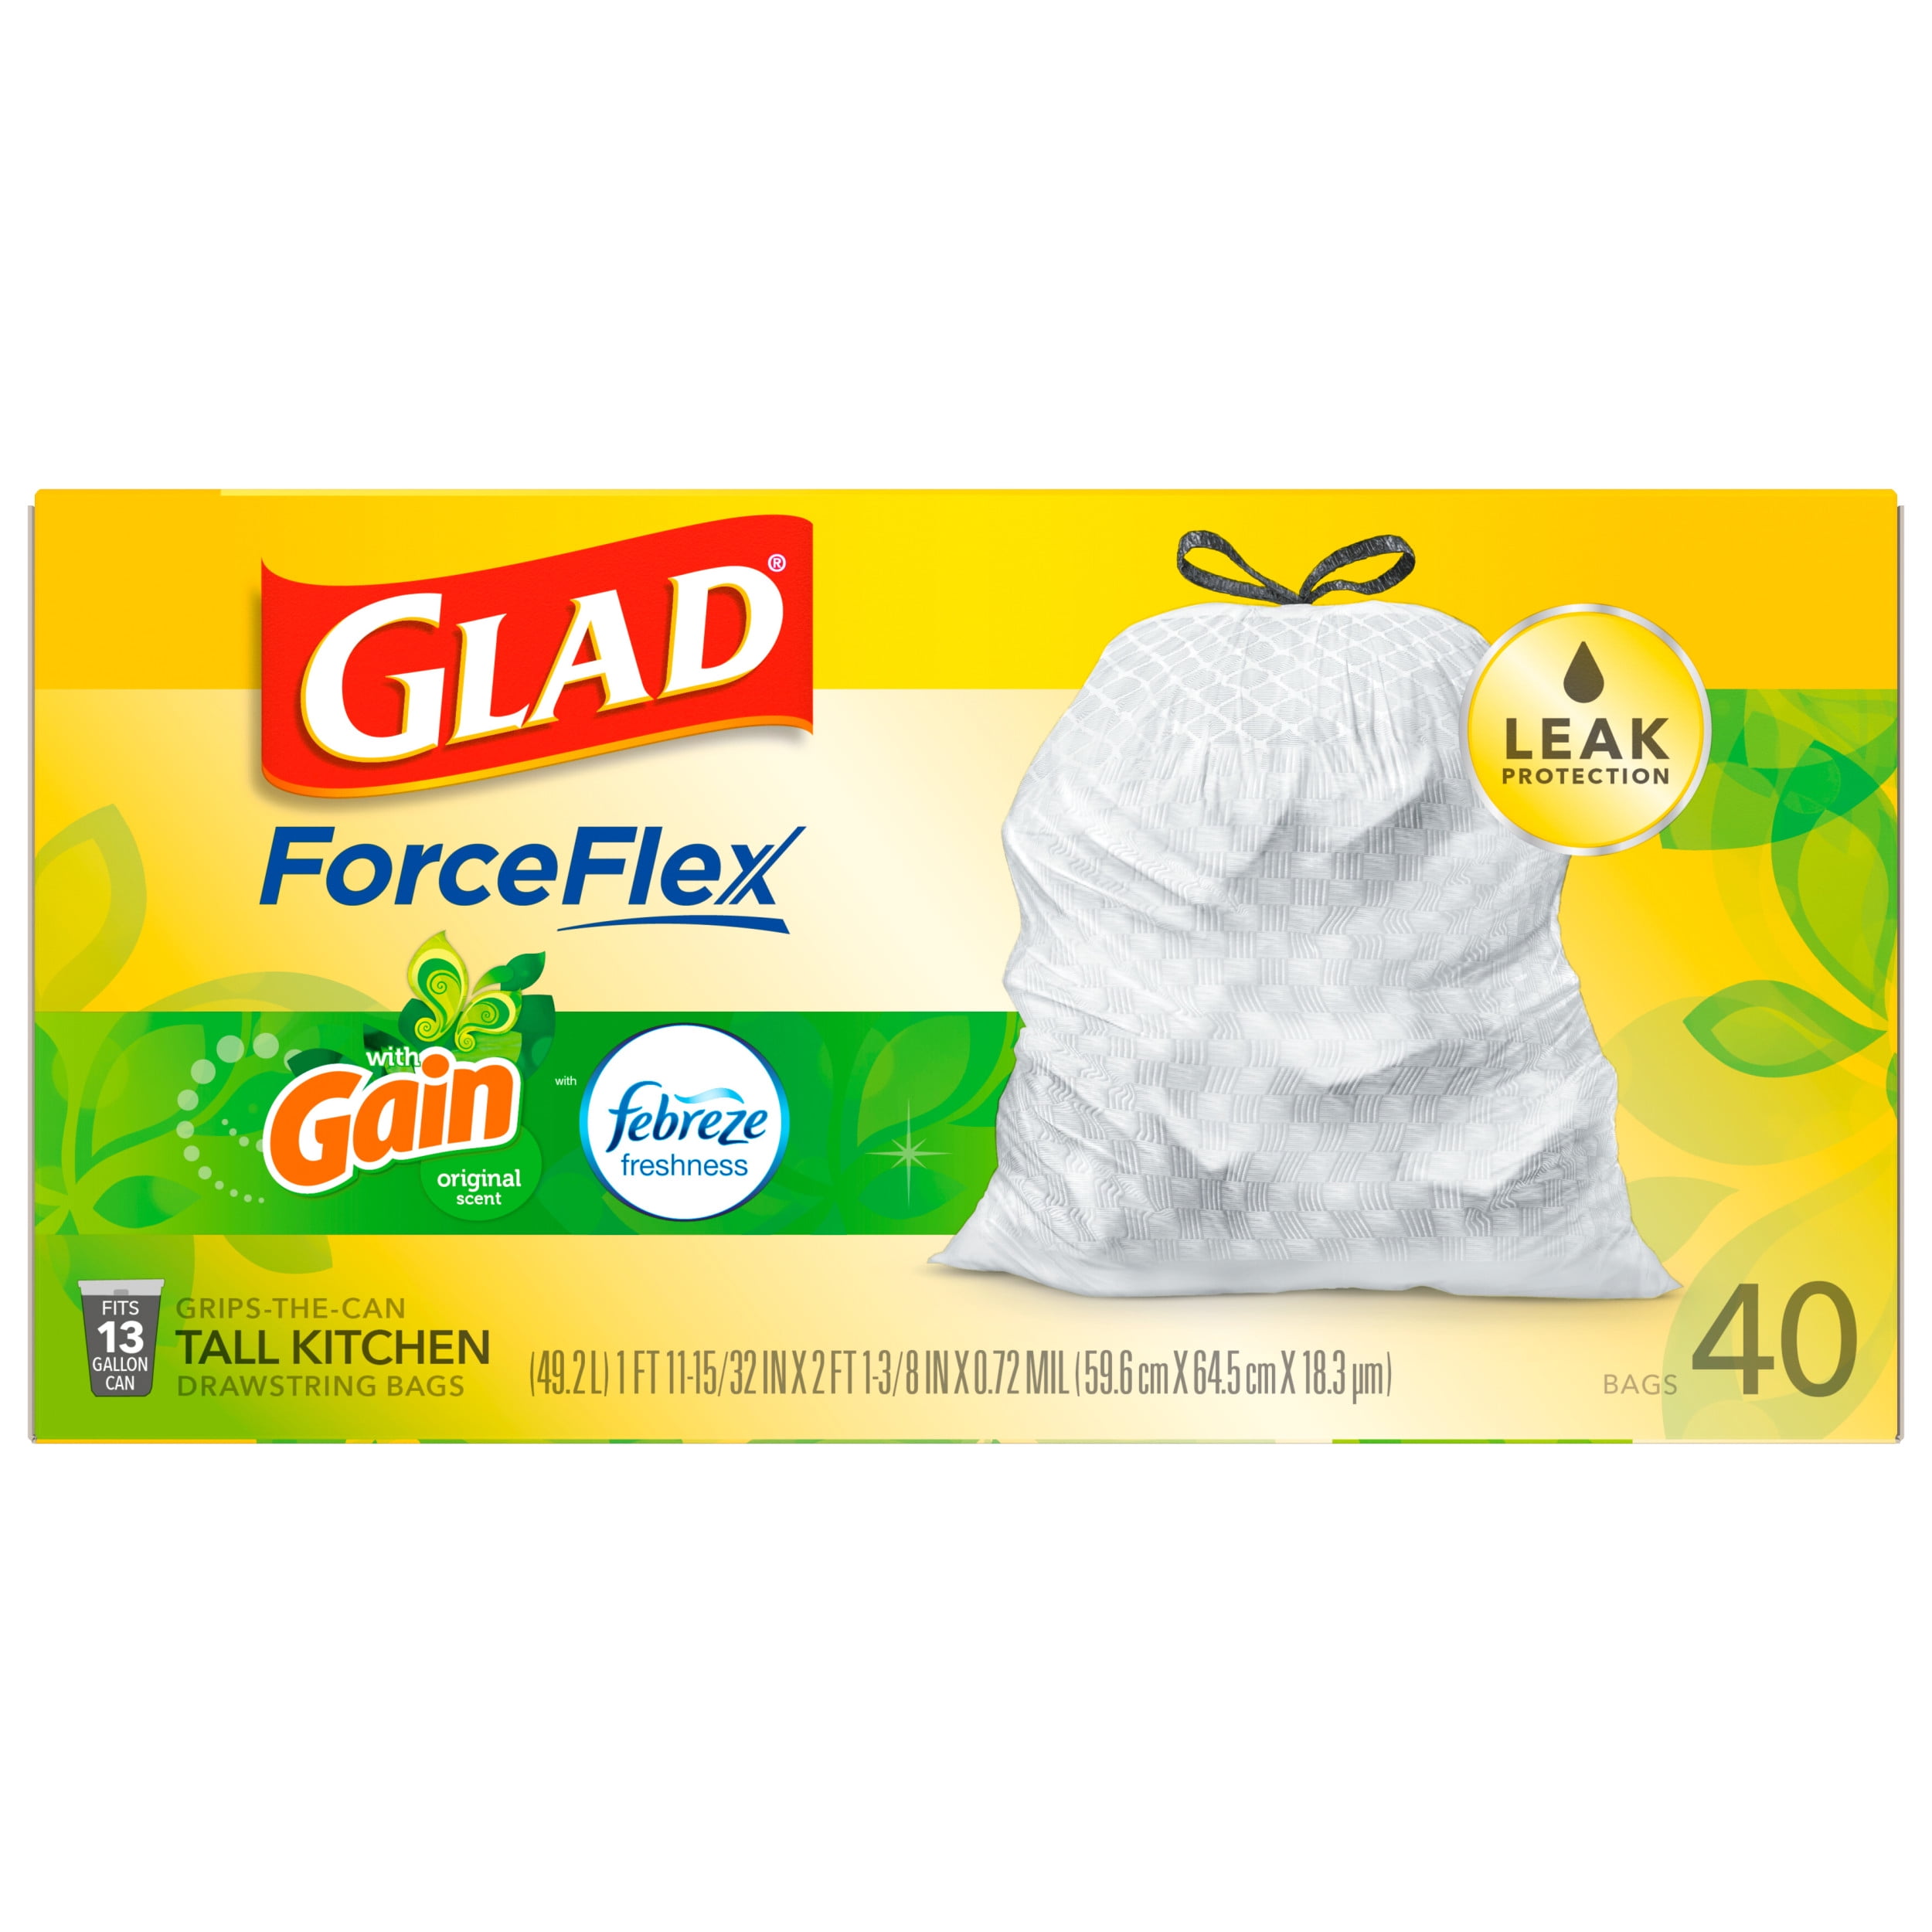 Glad ForceFlex 13-Gallons Gain Original White Plastic Kitchen